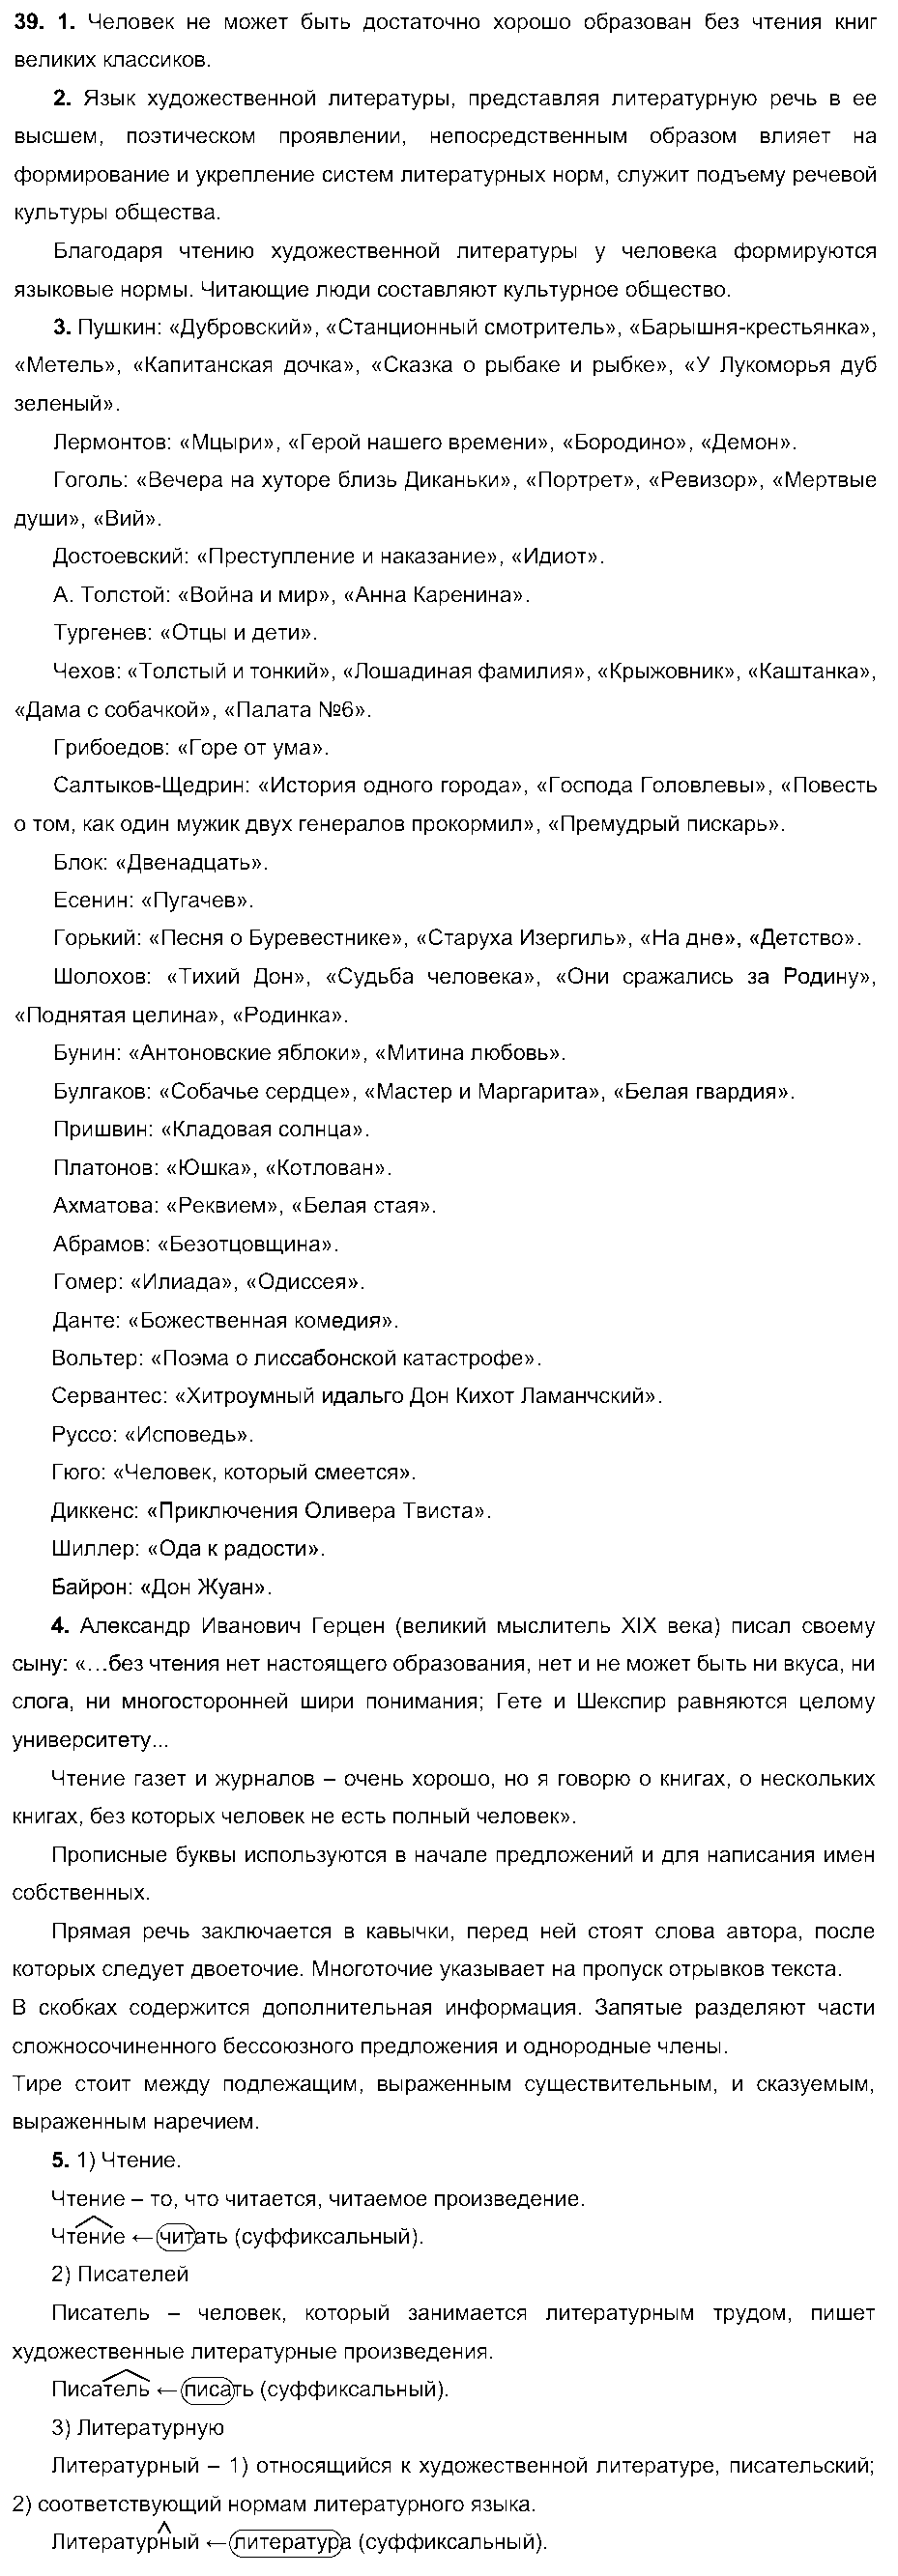 ГДЗ Русский язык 6 класс - 39